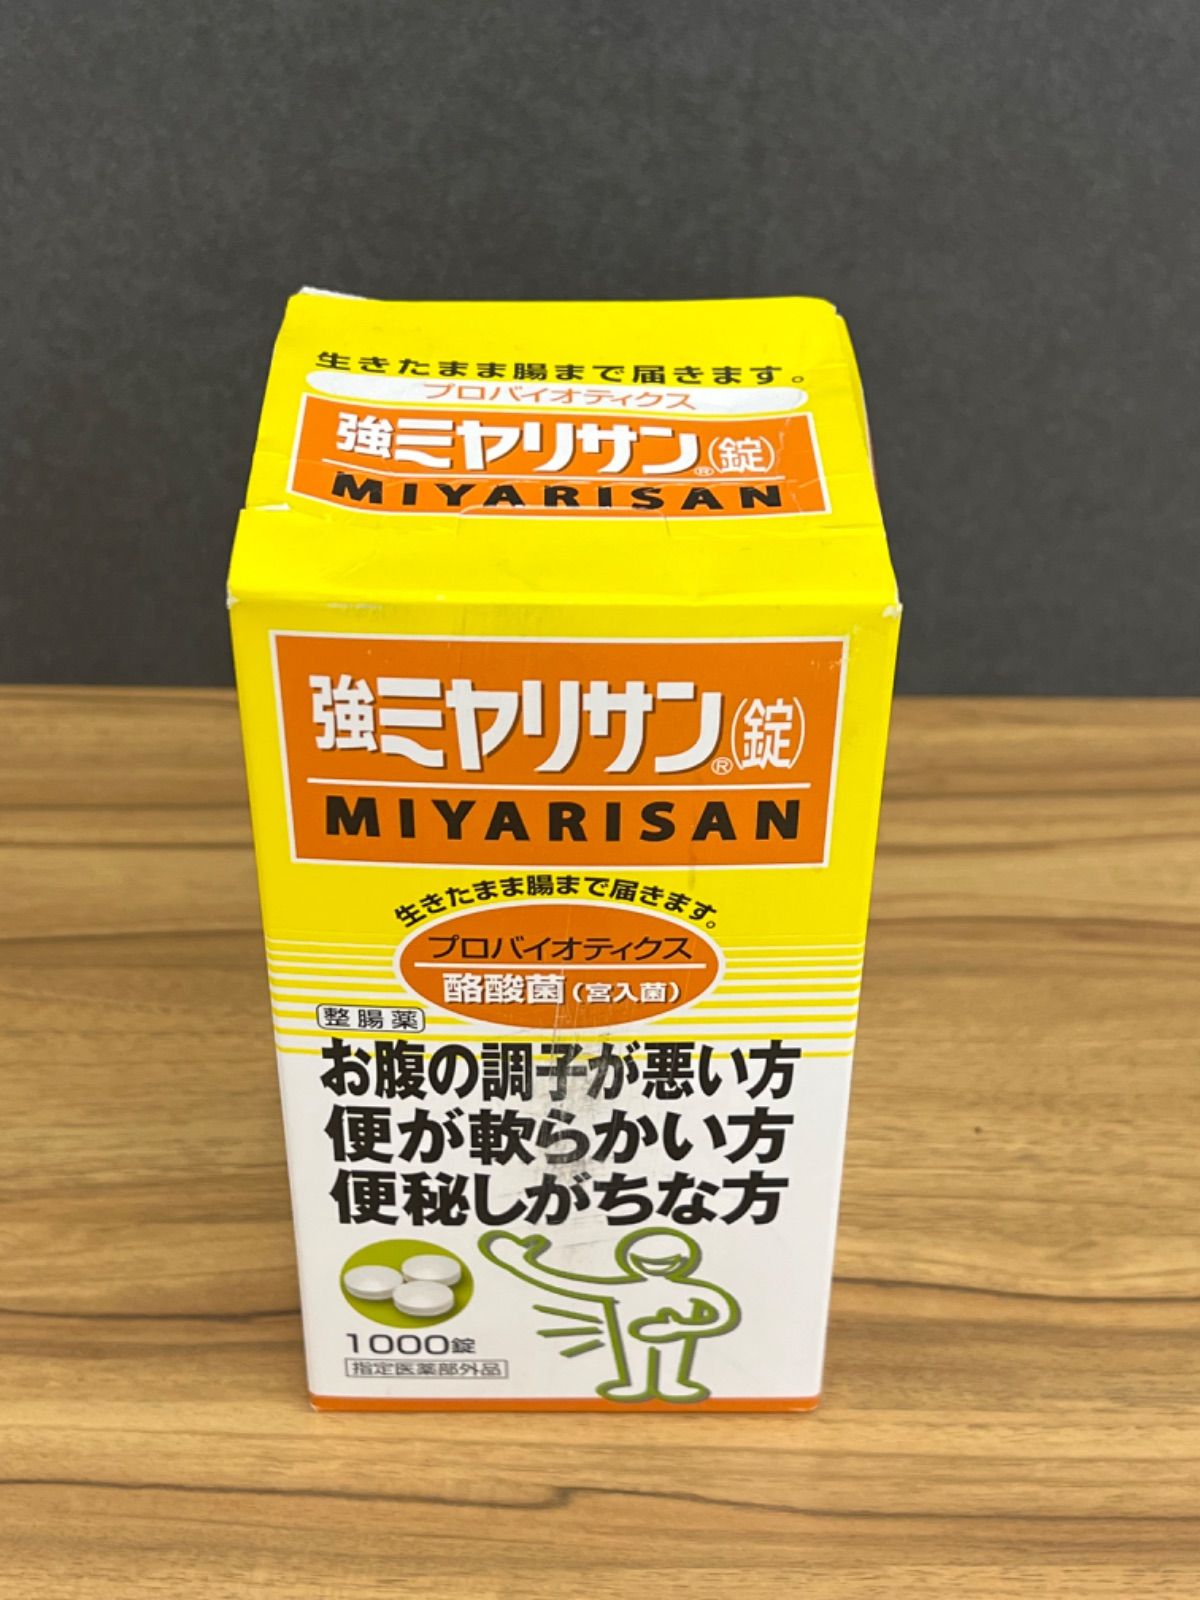 強ミヤリサン錠 MIYARISAN 330錠×2箱セット